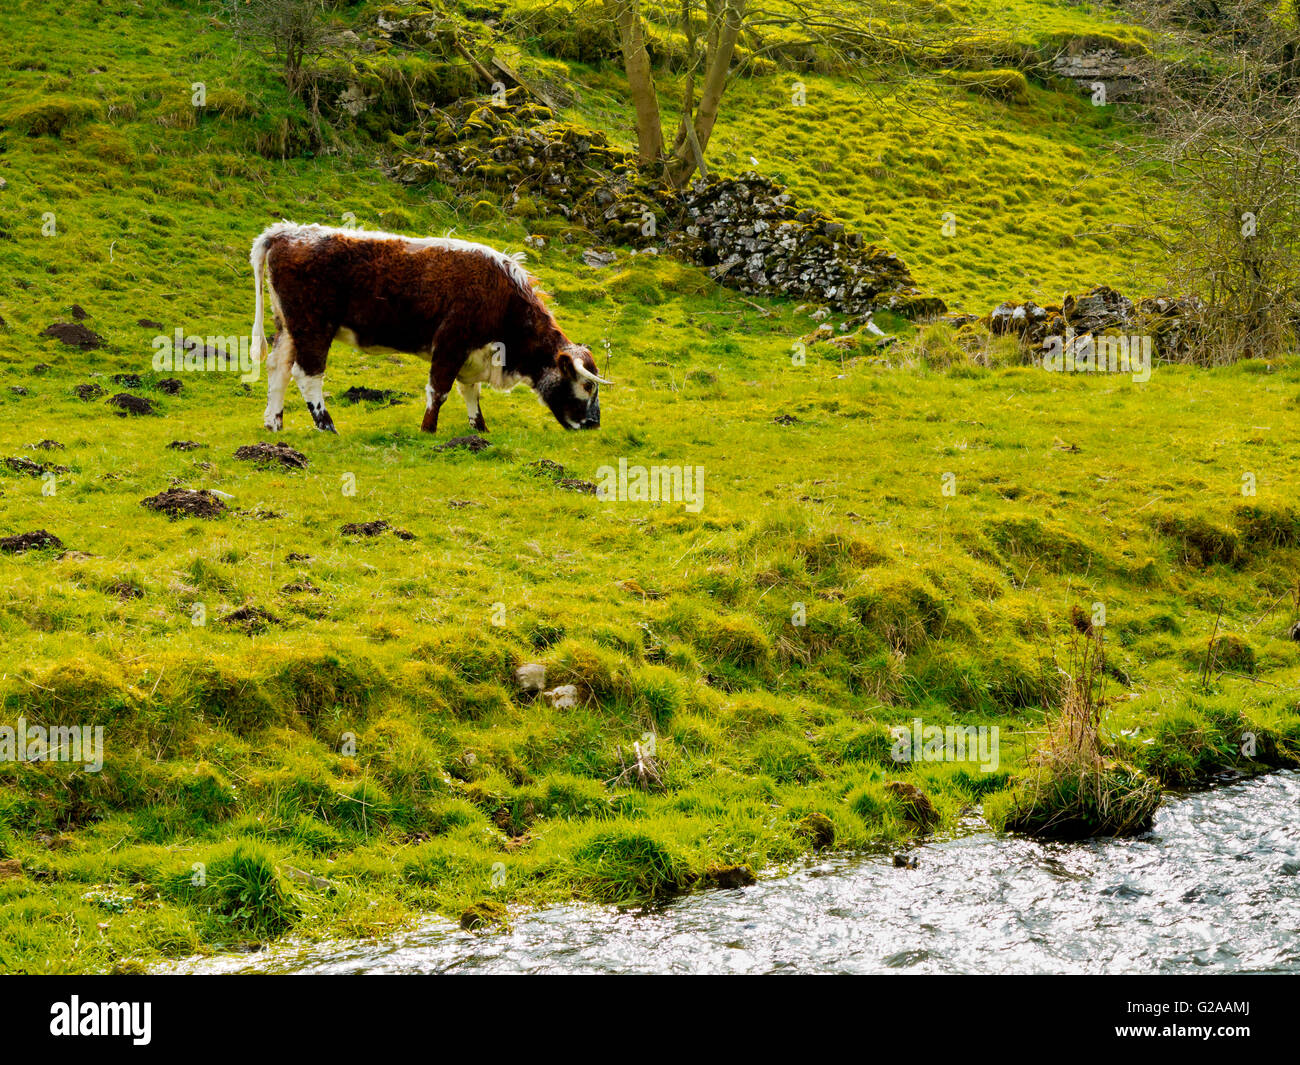 Il pascolo di bestiame su terreni agricoli accanto al fiume Bradford in Youlgreave nel Parco Nazionale di Peak District Derbyshire Dales Inghilterra Foto Stock